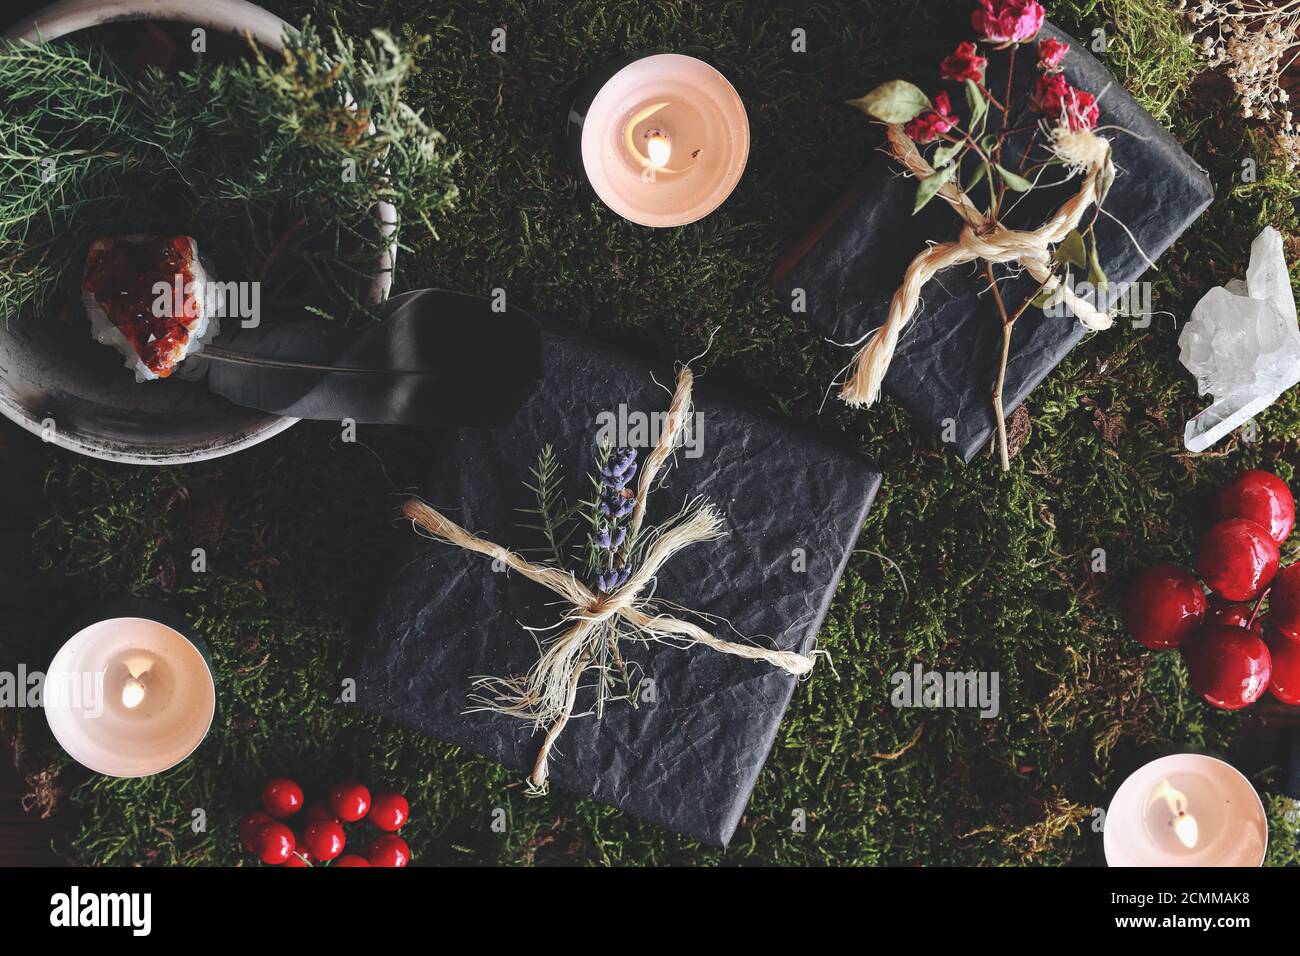 Yule (Navidad) tema plano de la disposición de regalos negros sobre el fondo del bosque de la naturaleza. Humor esotérico oculto de los regalos envueltos en papel de tejido negro Foto de stock